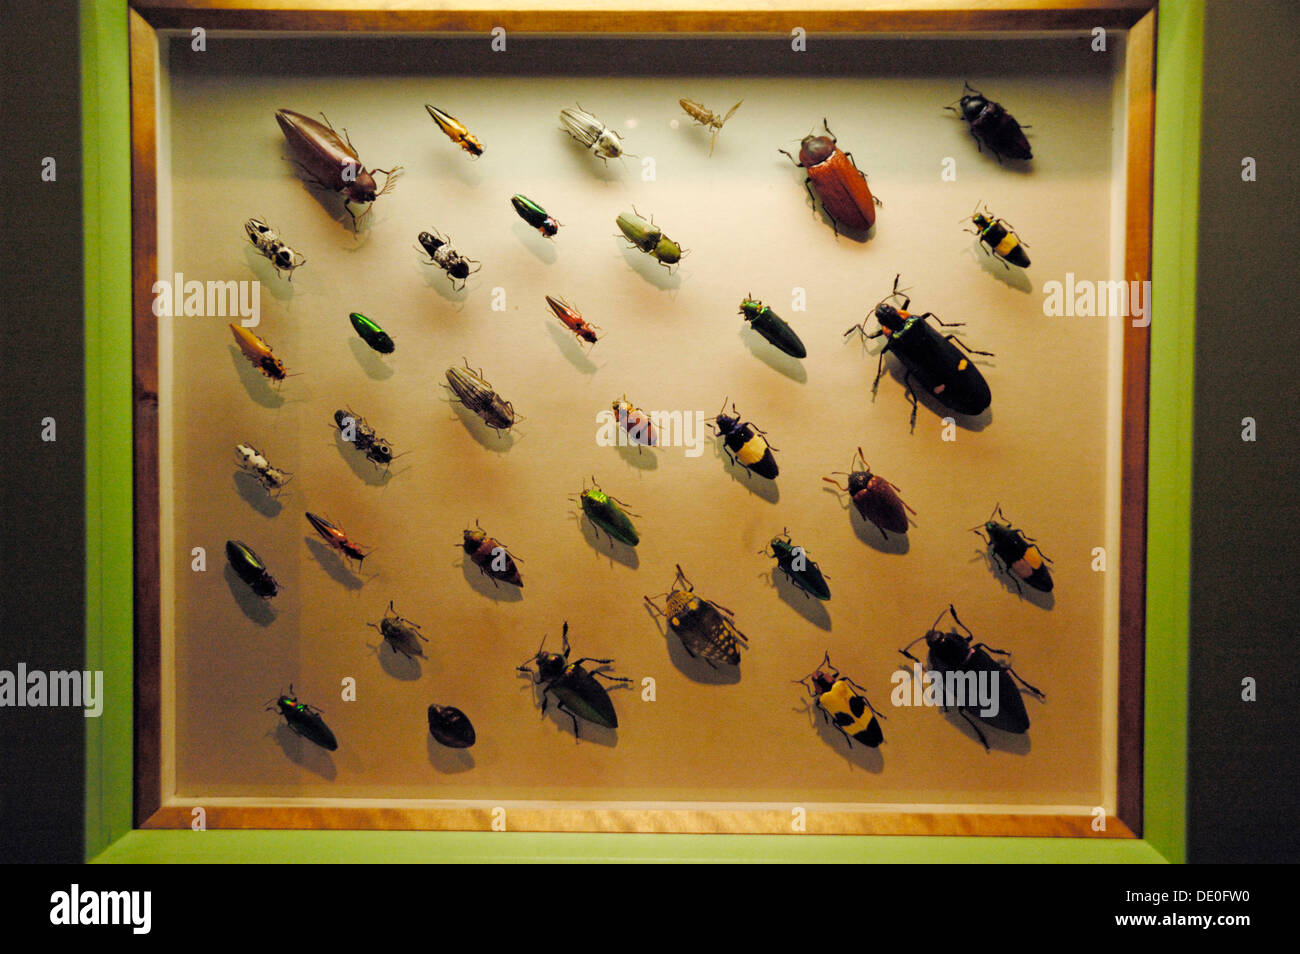 Verschiedenen Prachtkäfer oder metallischen Holz-langweilig Käfer (Buprestidae), klicken Sie auf Käfer (Elateridae) in einer Vitrine, Insekt Ausstellung Stockfoto